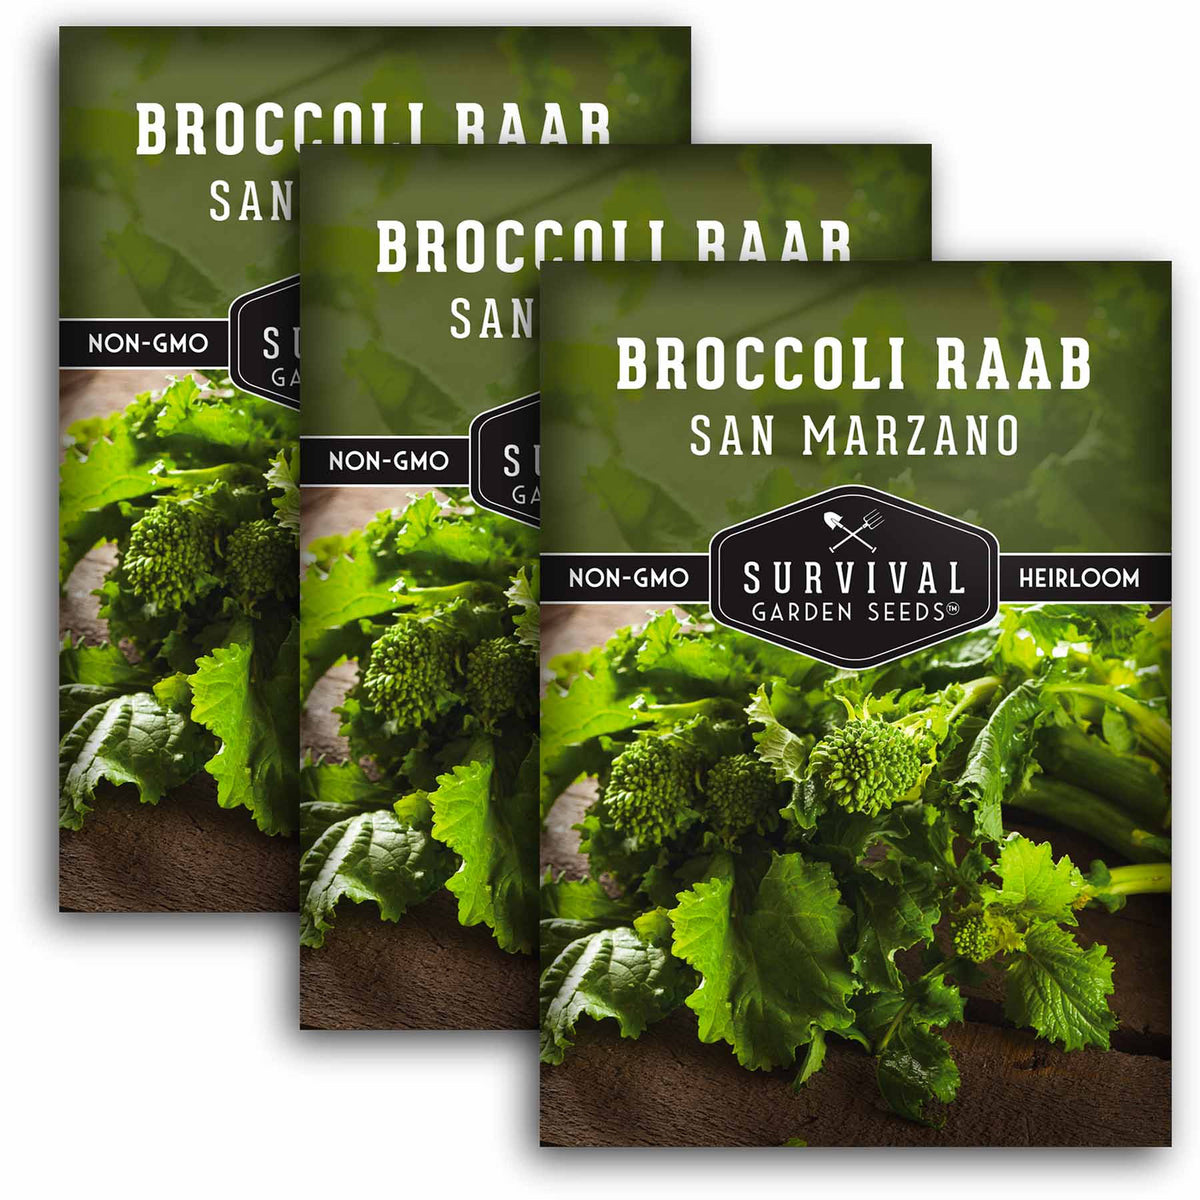 3 packets of San Marzano Broccoli Raab seeds